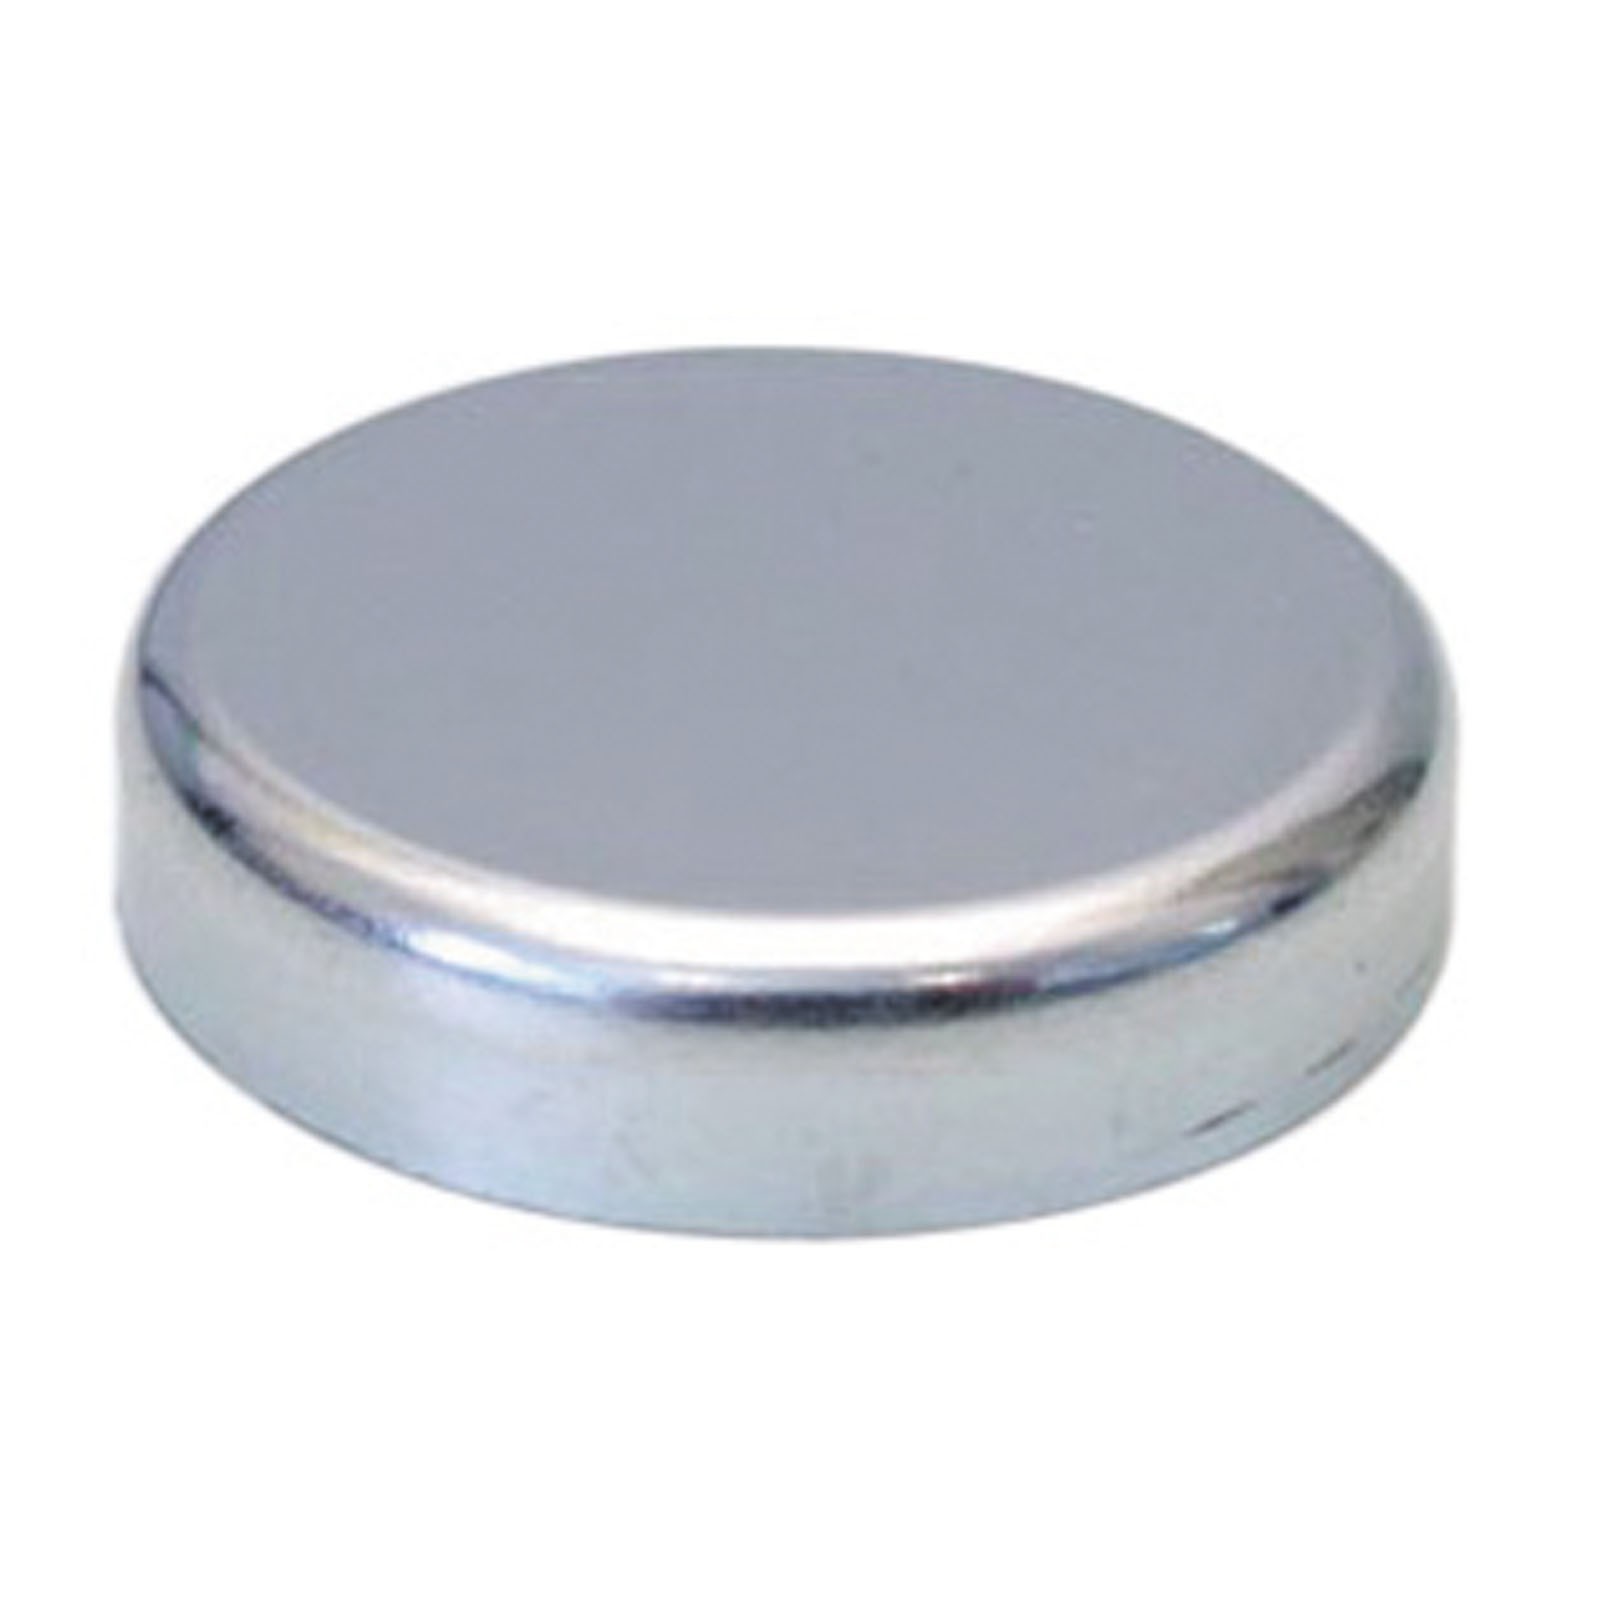 Flachgreifer Magnet Neodym Magnetfuß Oxit Hartferrit div Größen bis 125mm 1300 N Größe:25.0 mm von Rimag